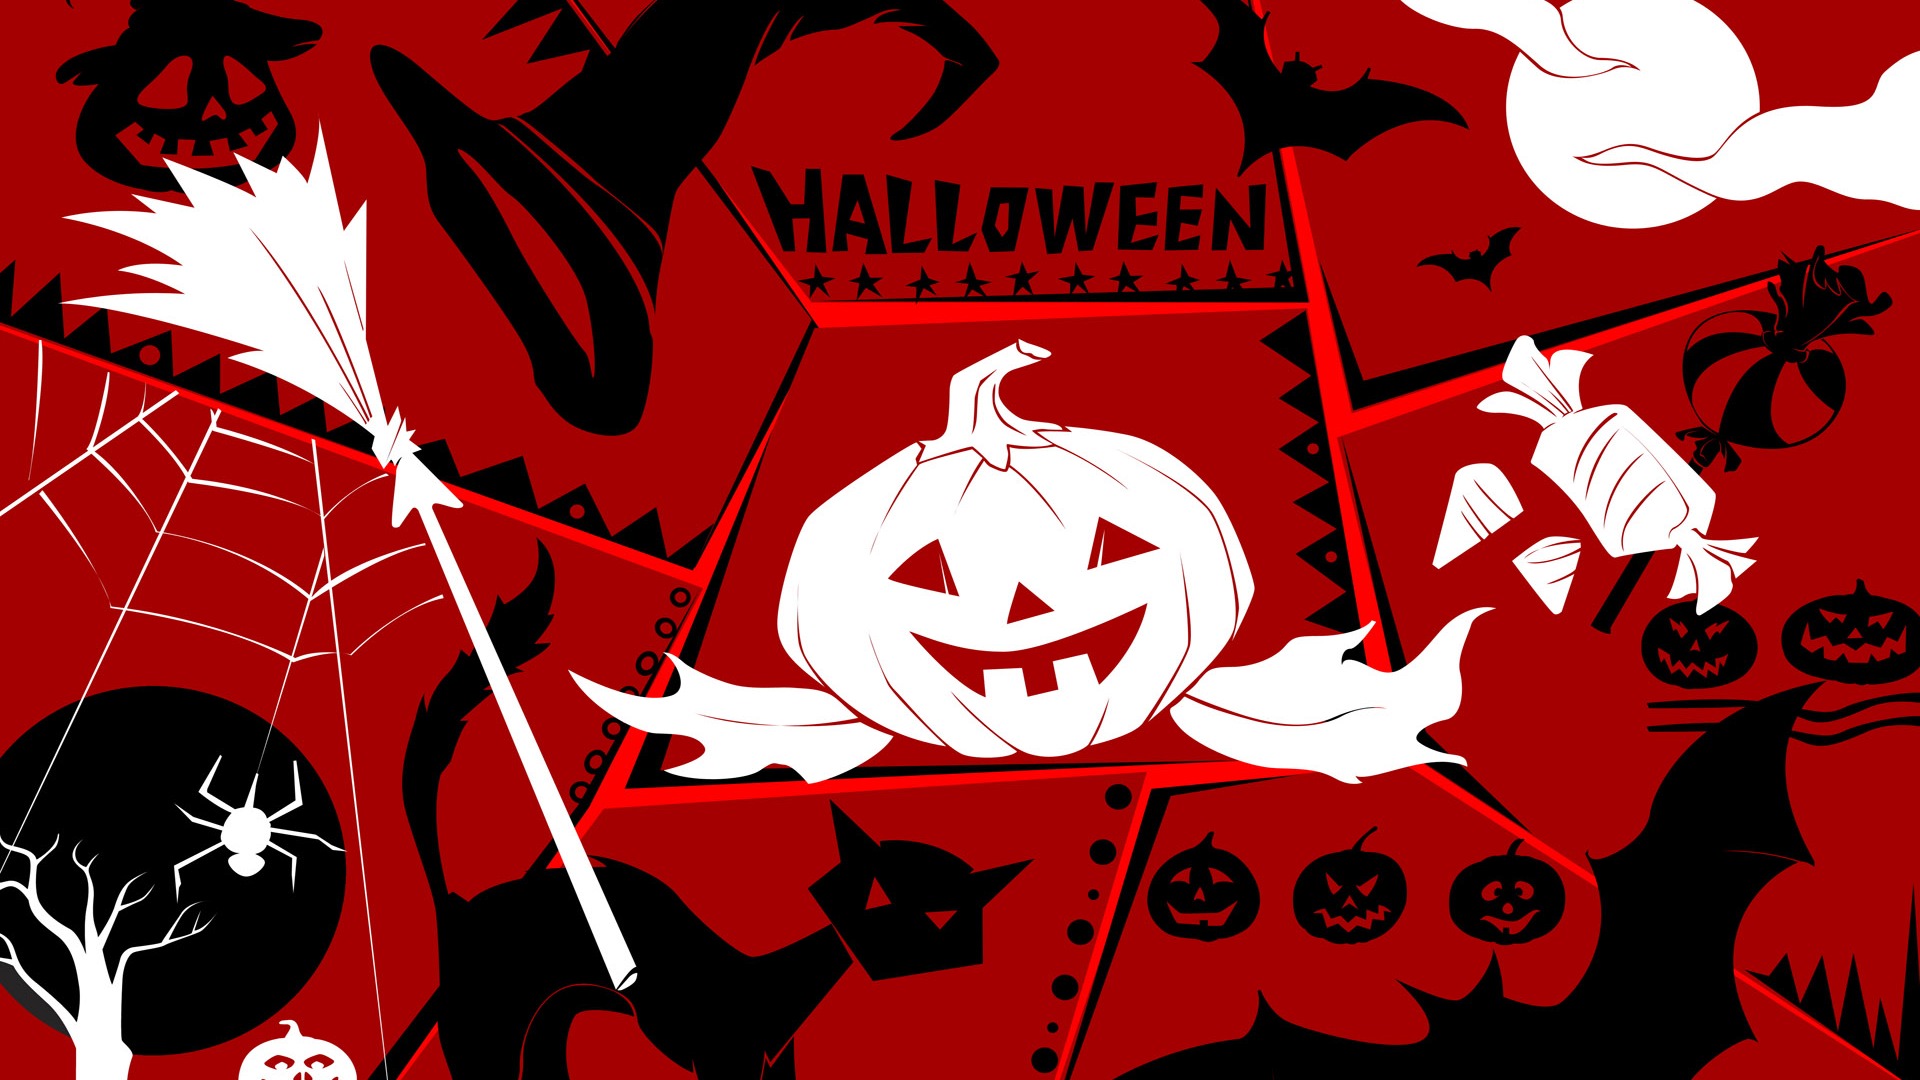 Fondos de Halloween temáticos (3) #8 - 1920x1080